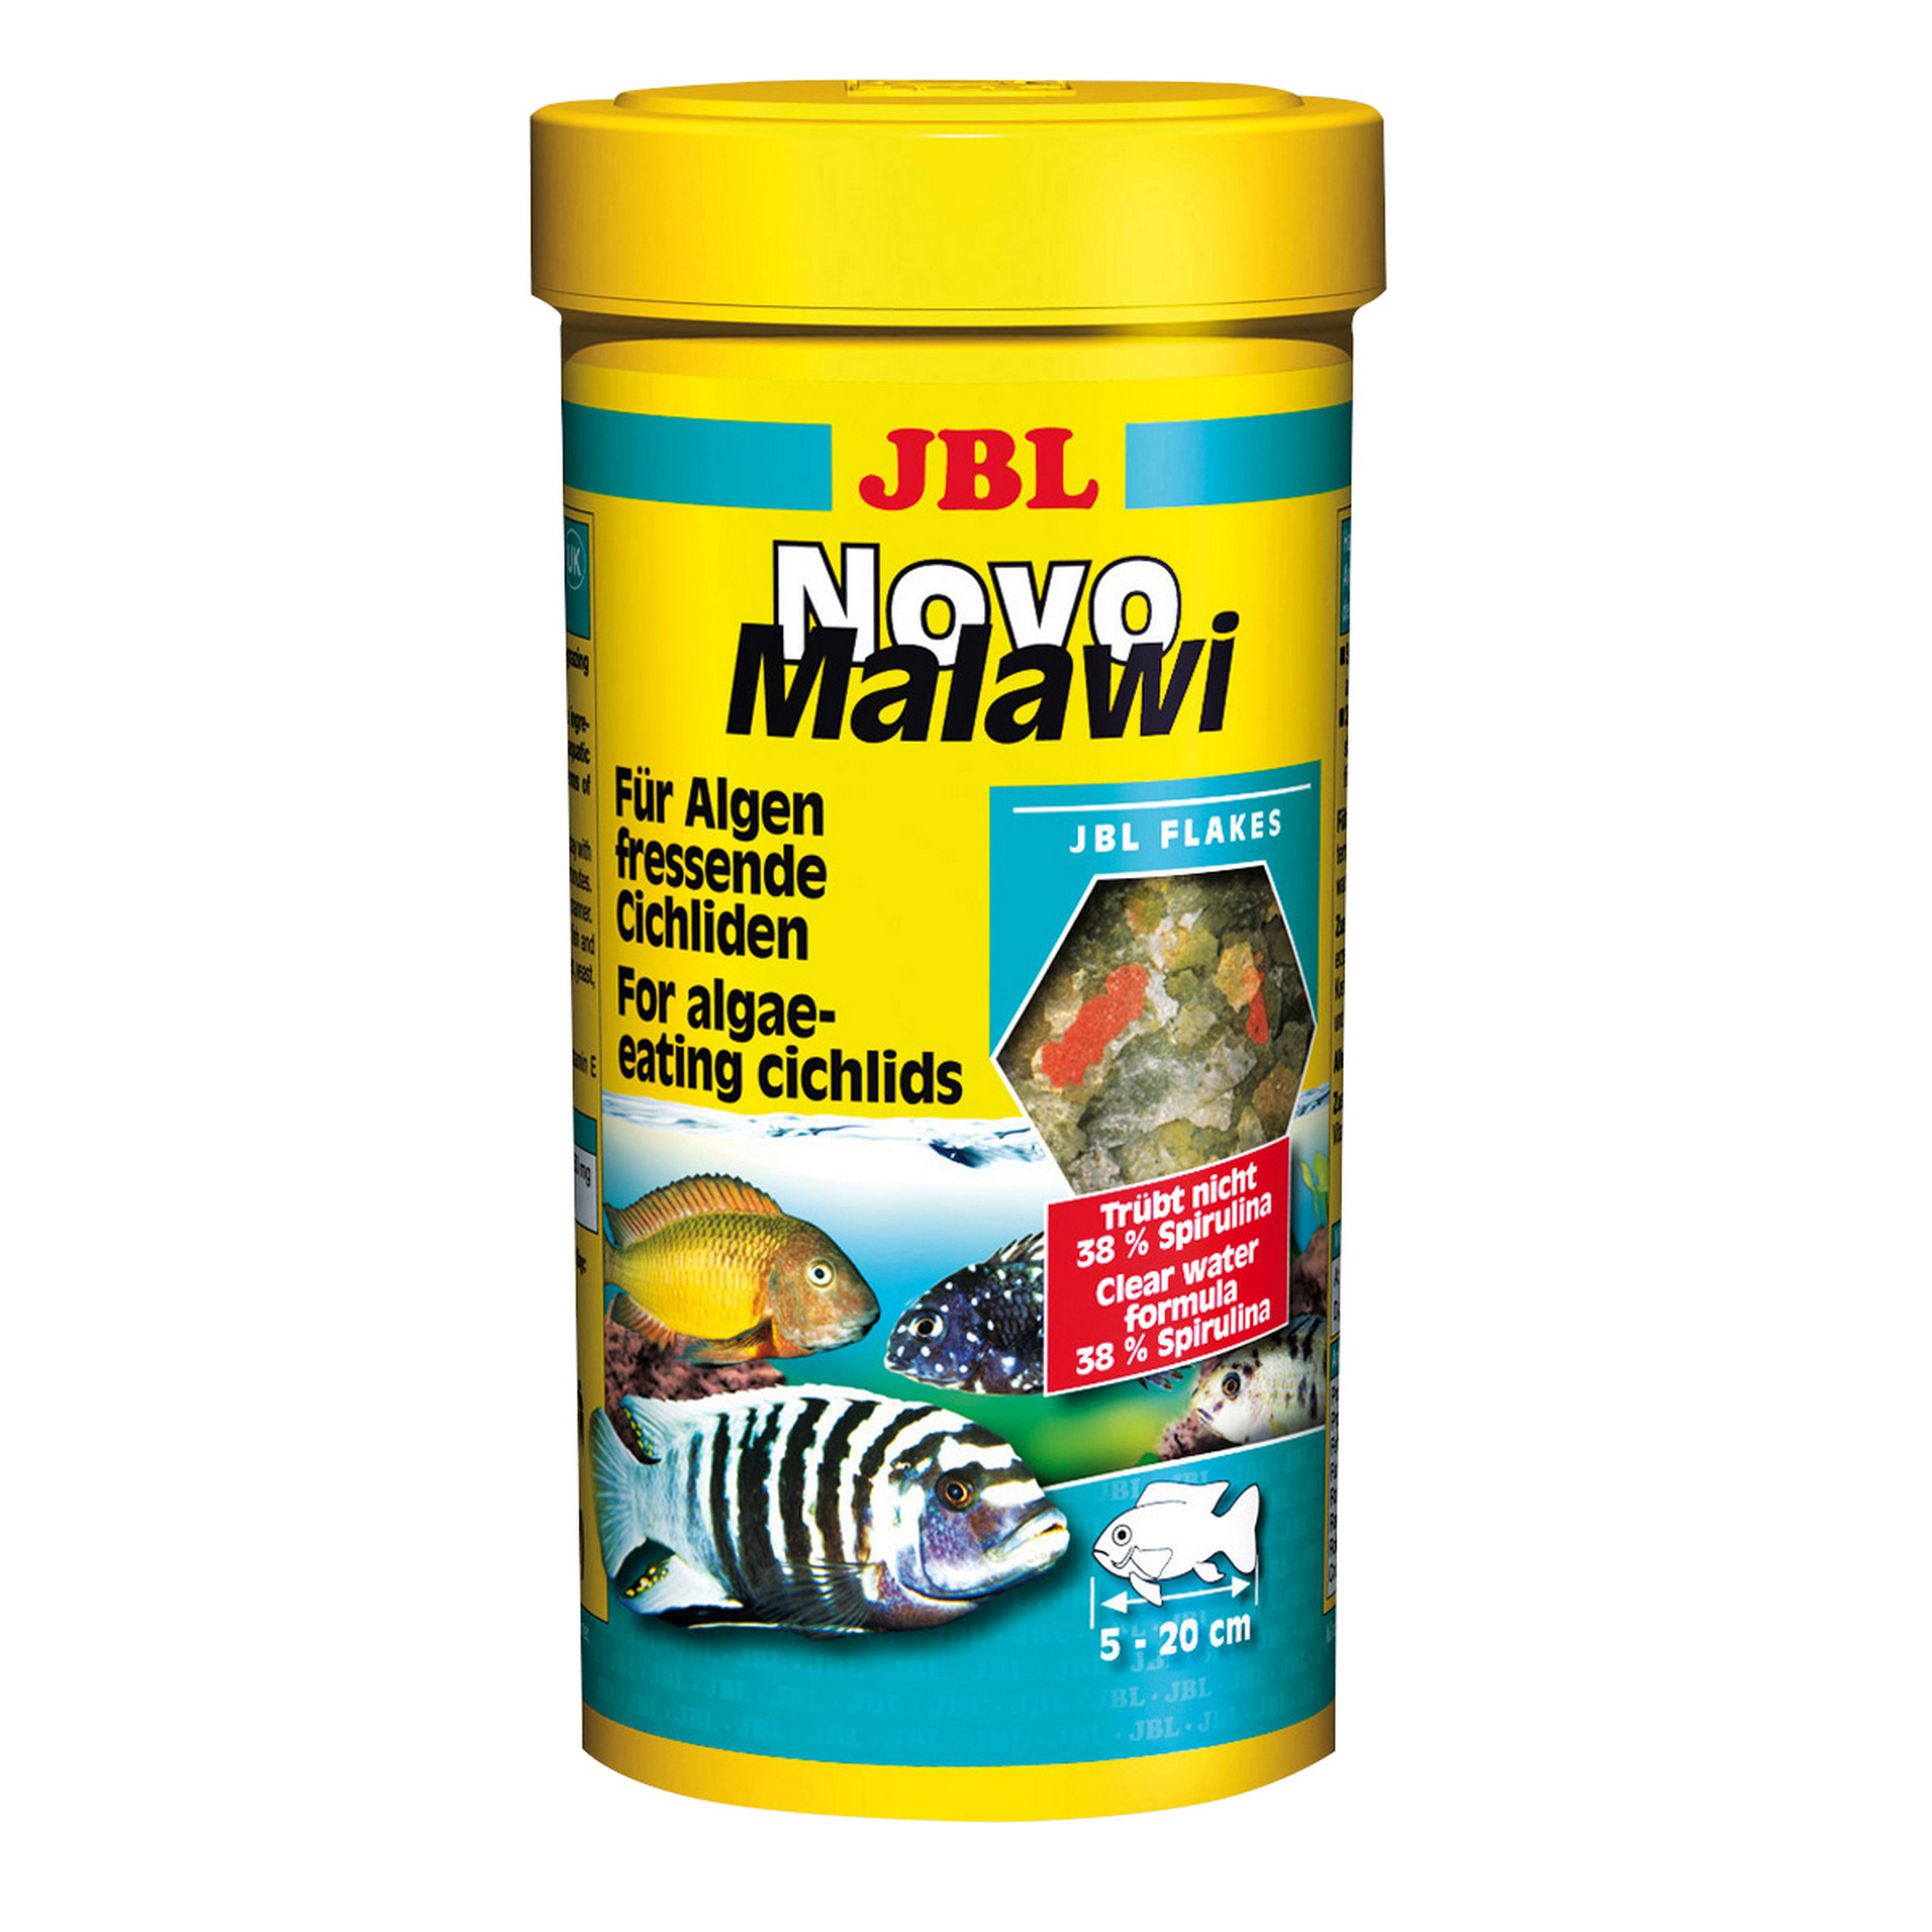 Novo Malawi für Algen fressende Cichliden 250 ml + product picture